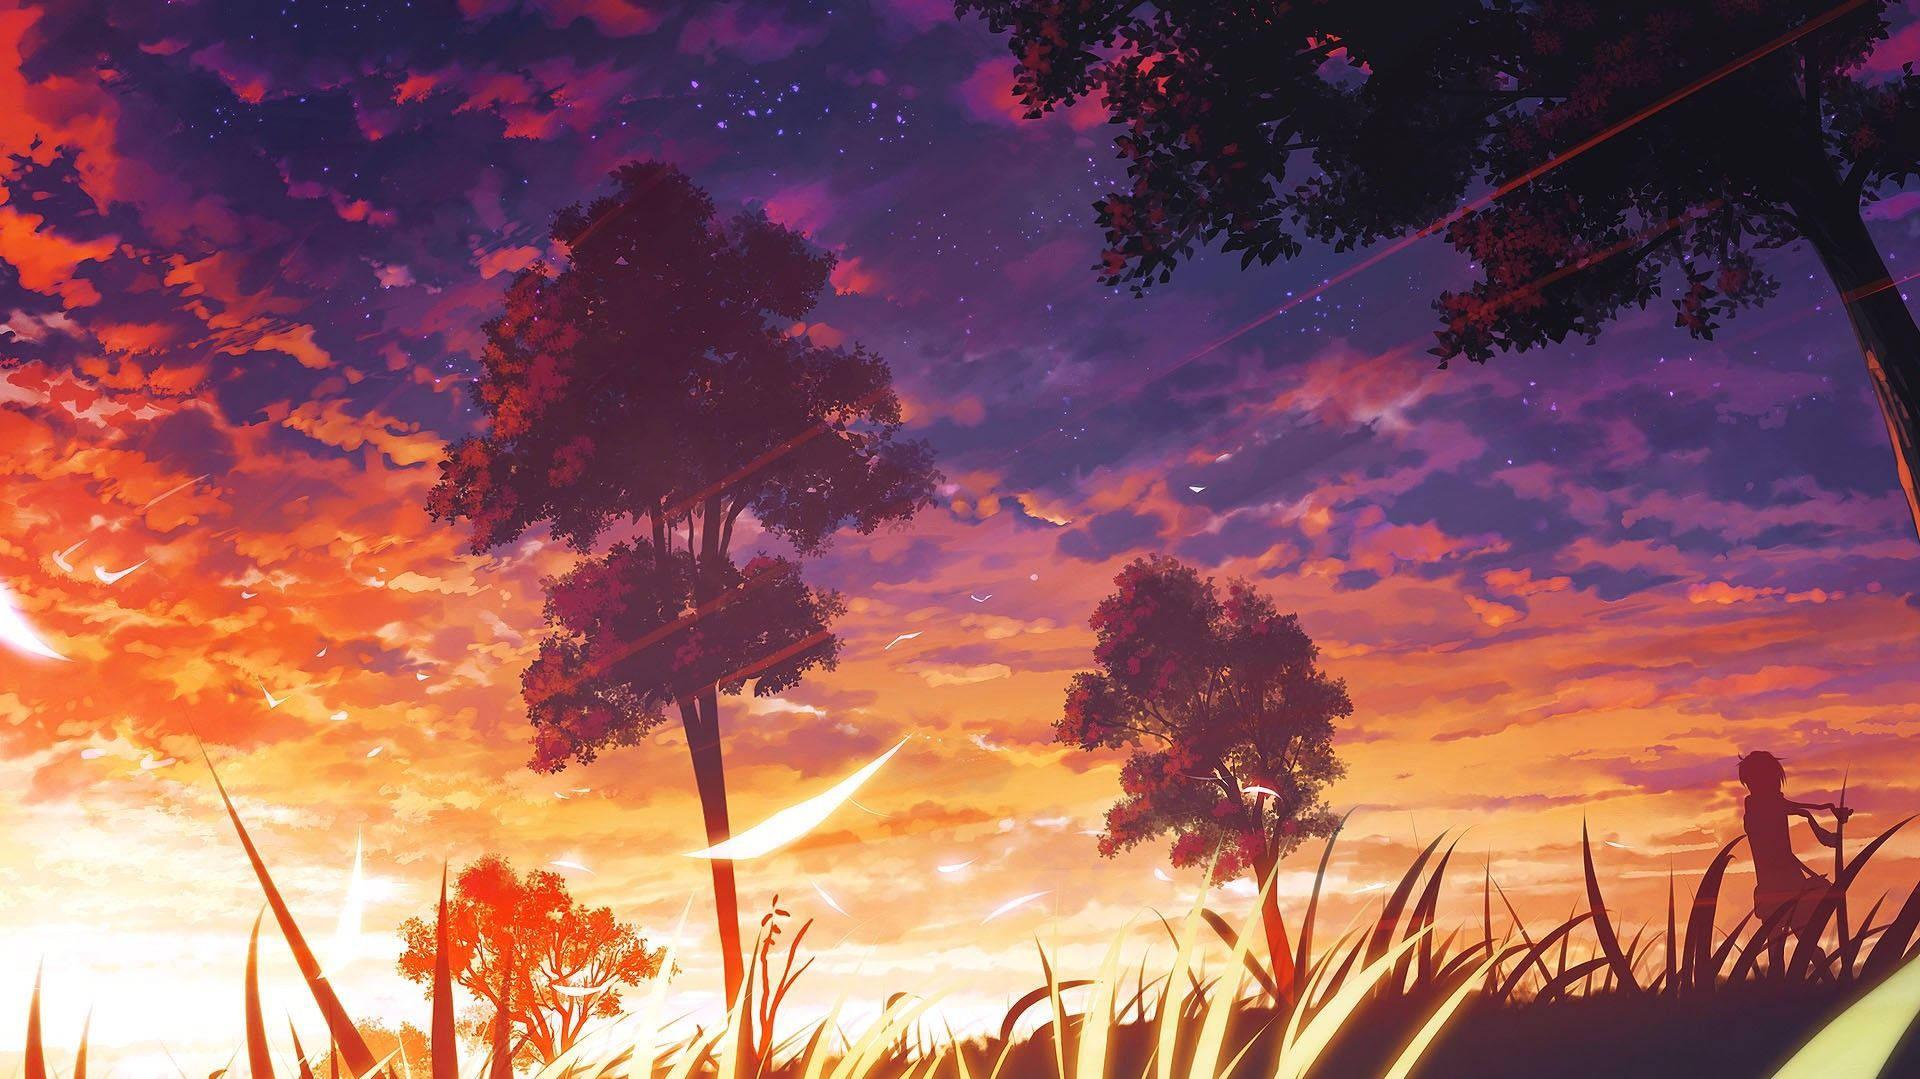 Illuminated Sunset Aesthetic Anime Scenery Wallpaper